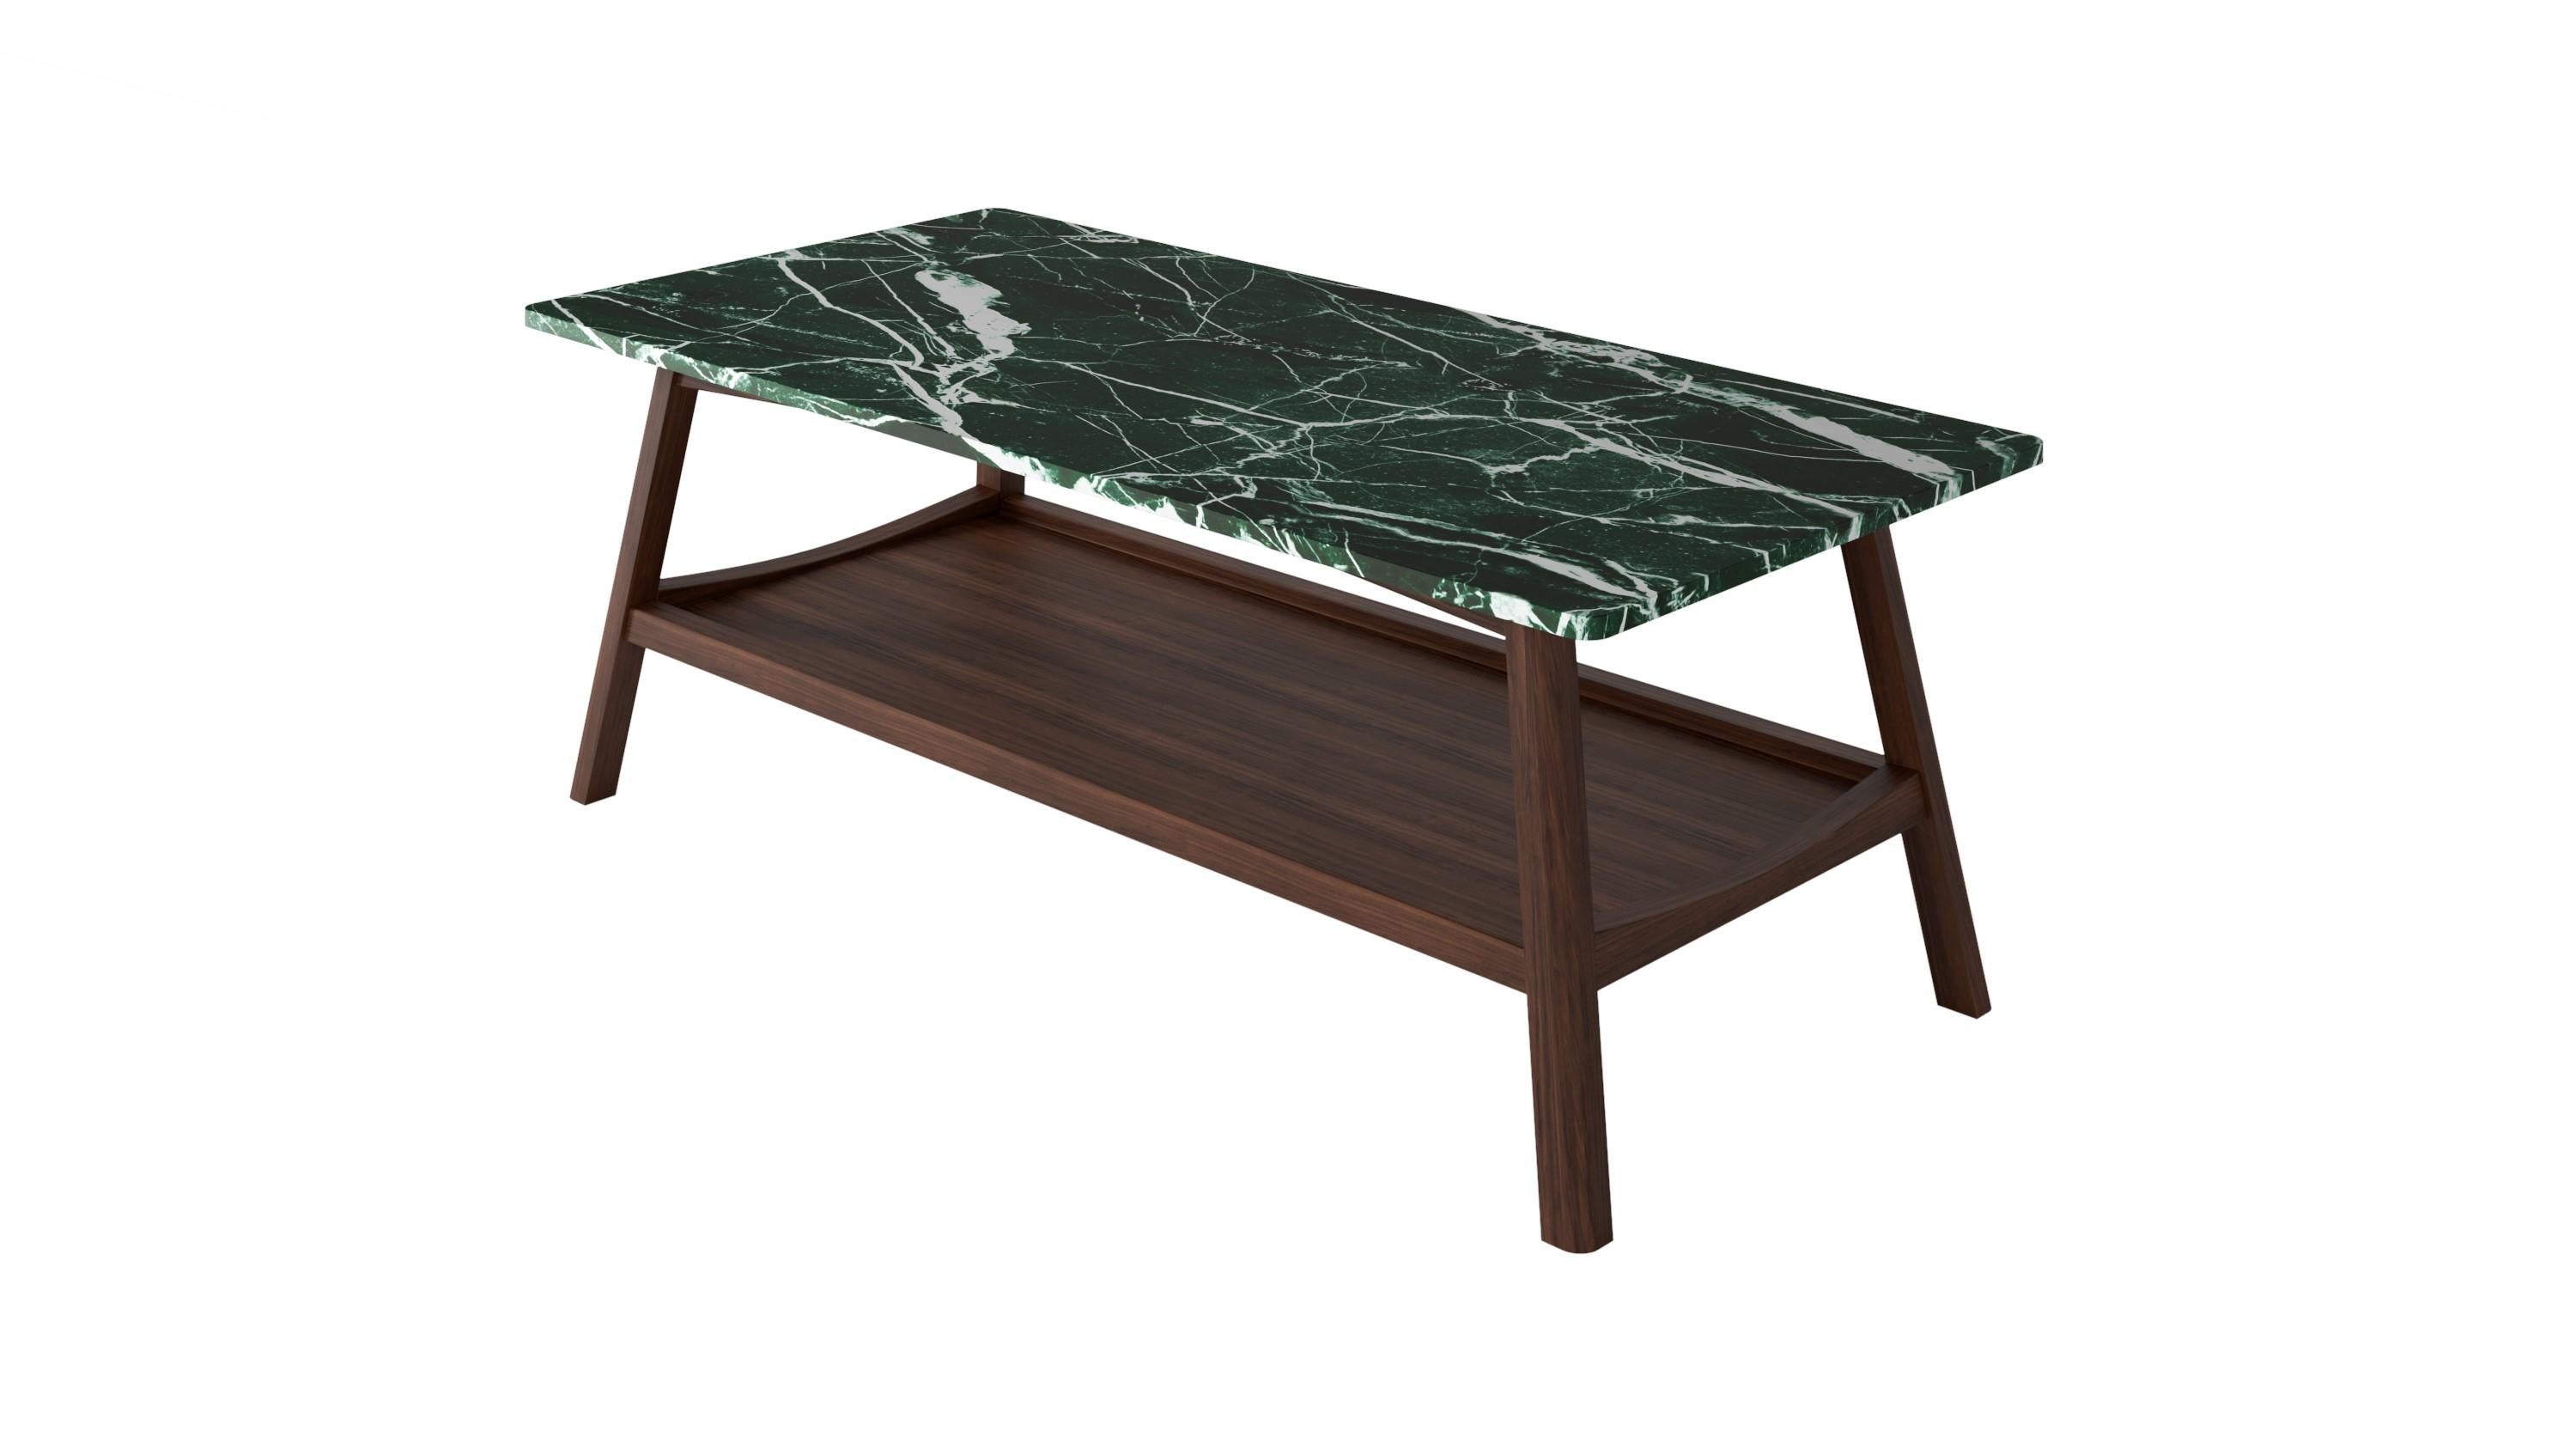 Scandinavian Modern NORDST KAREN Coffee Table, Italian White Mountain Marble, Danish Modern Design For Sale